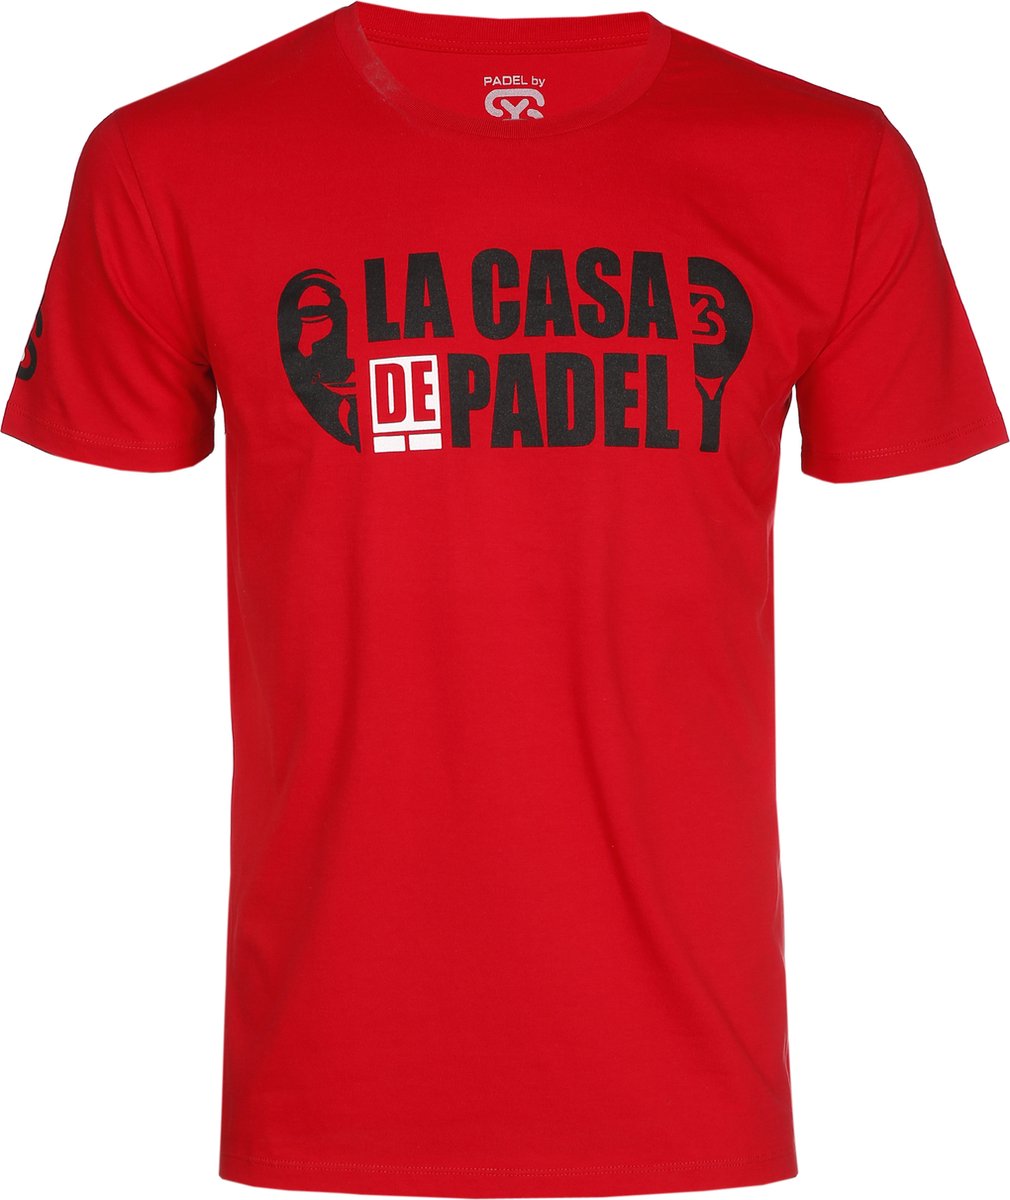 PADELbySY - PADEL - LA CASA DE PADEL - T-SHIRT MEN'S - RED - SIZE L